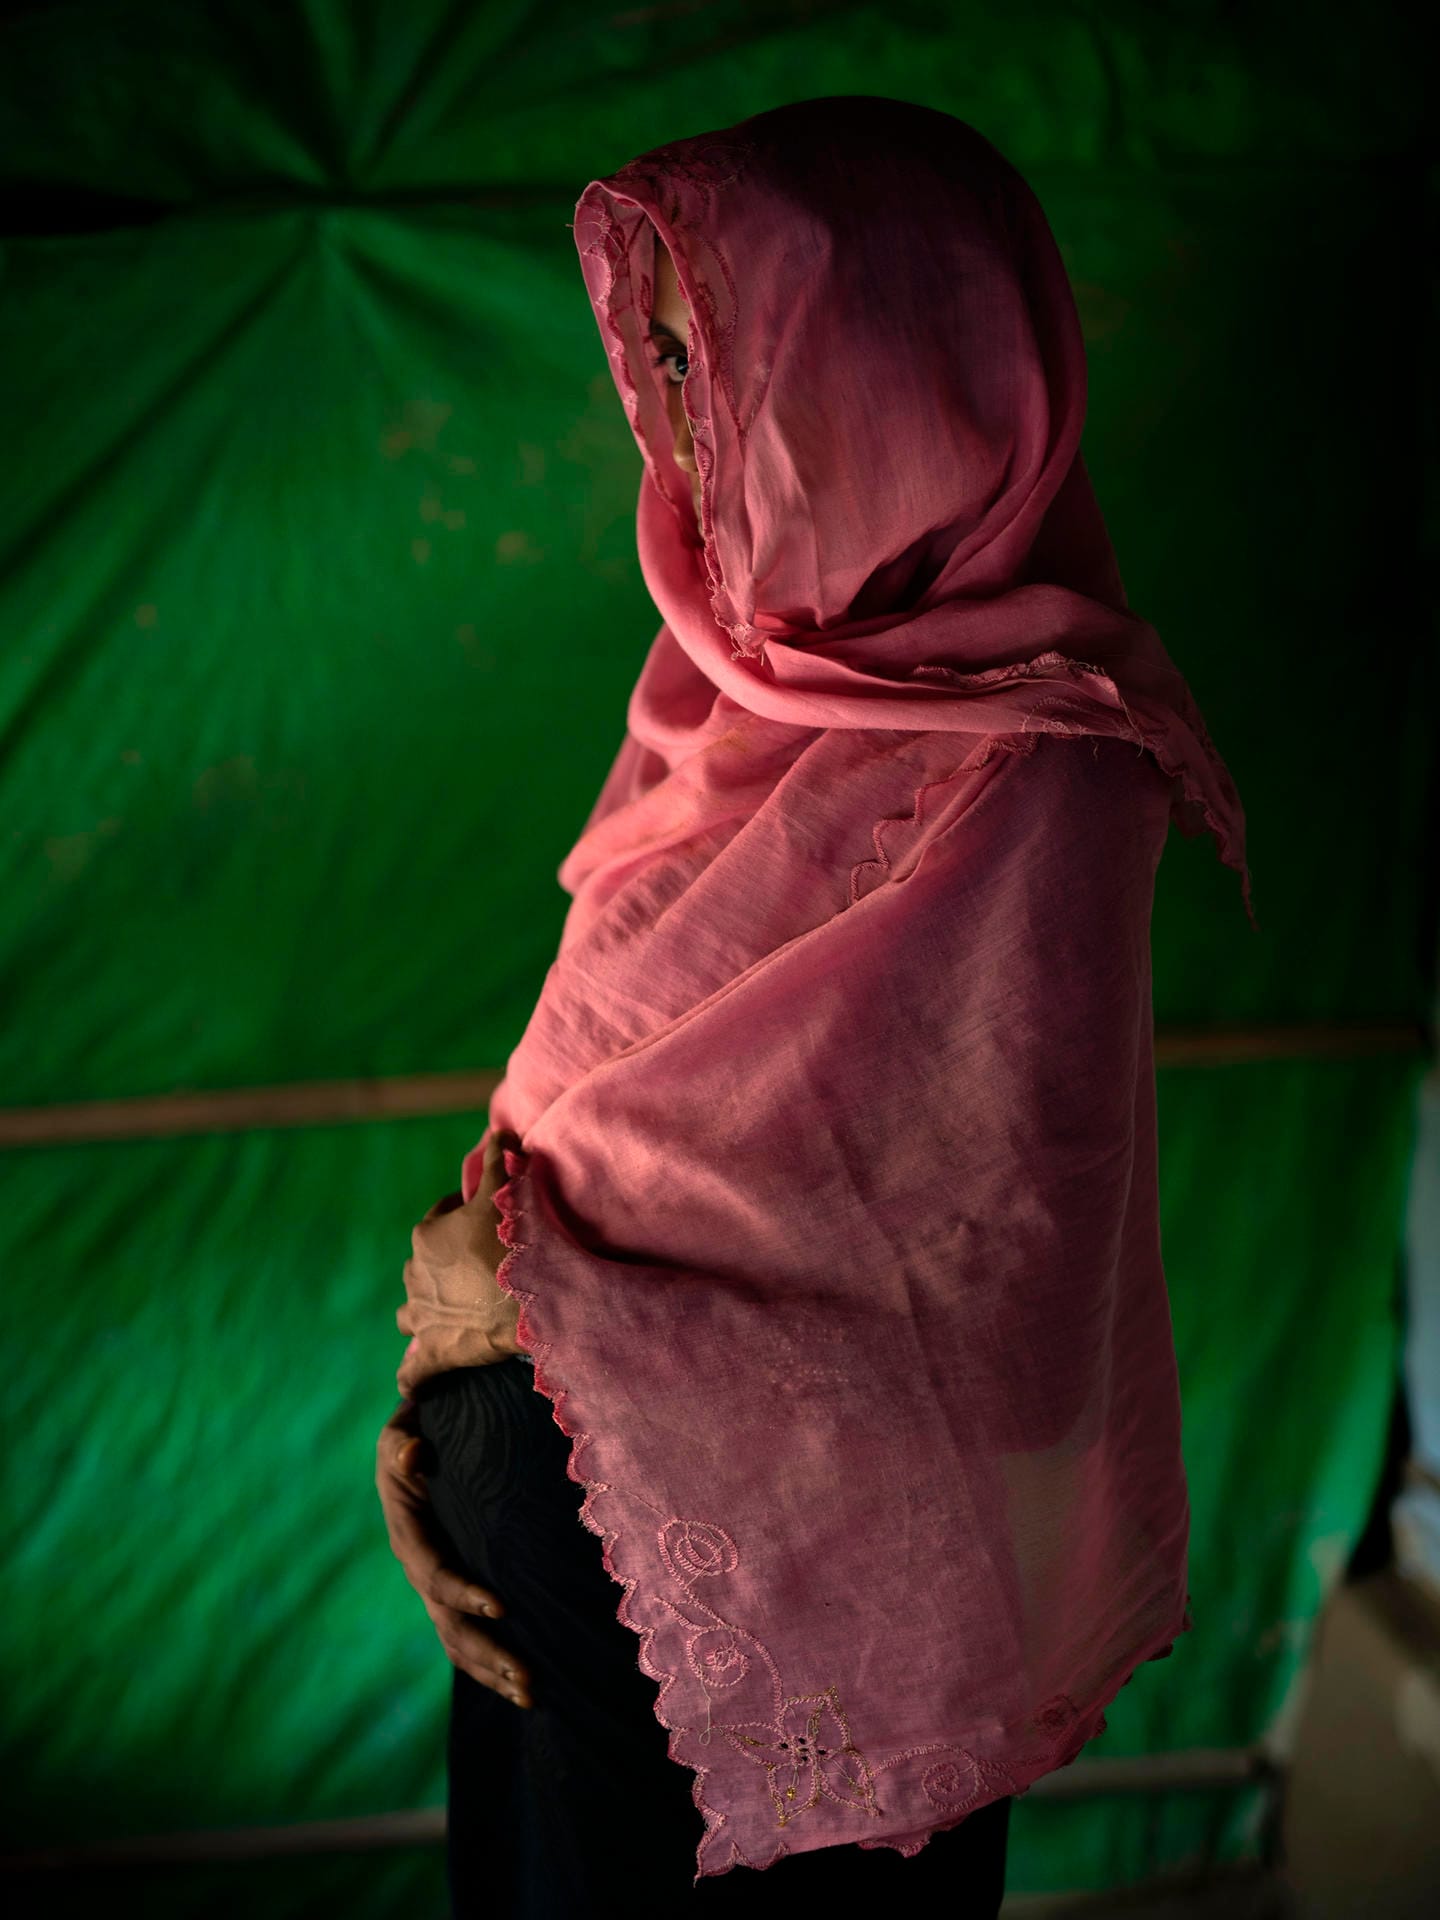 Bangladesch / Myanmar: Traumatische Mutterschaft